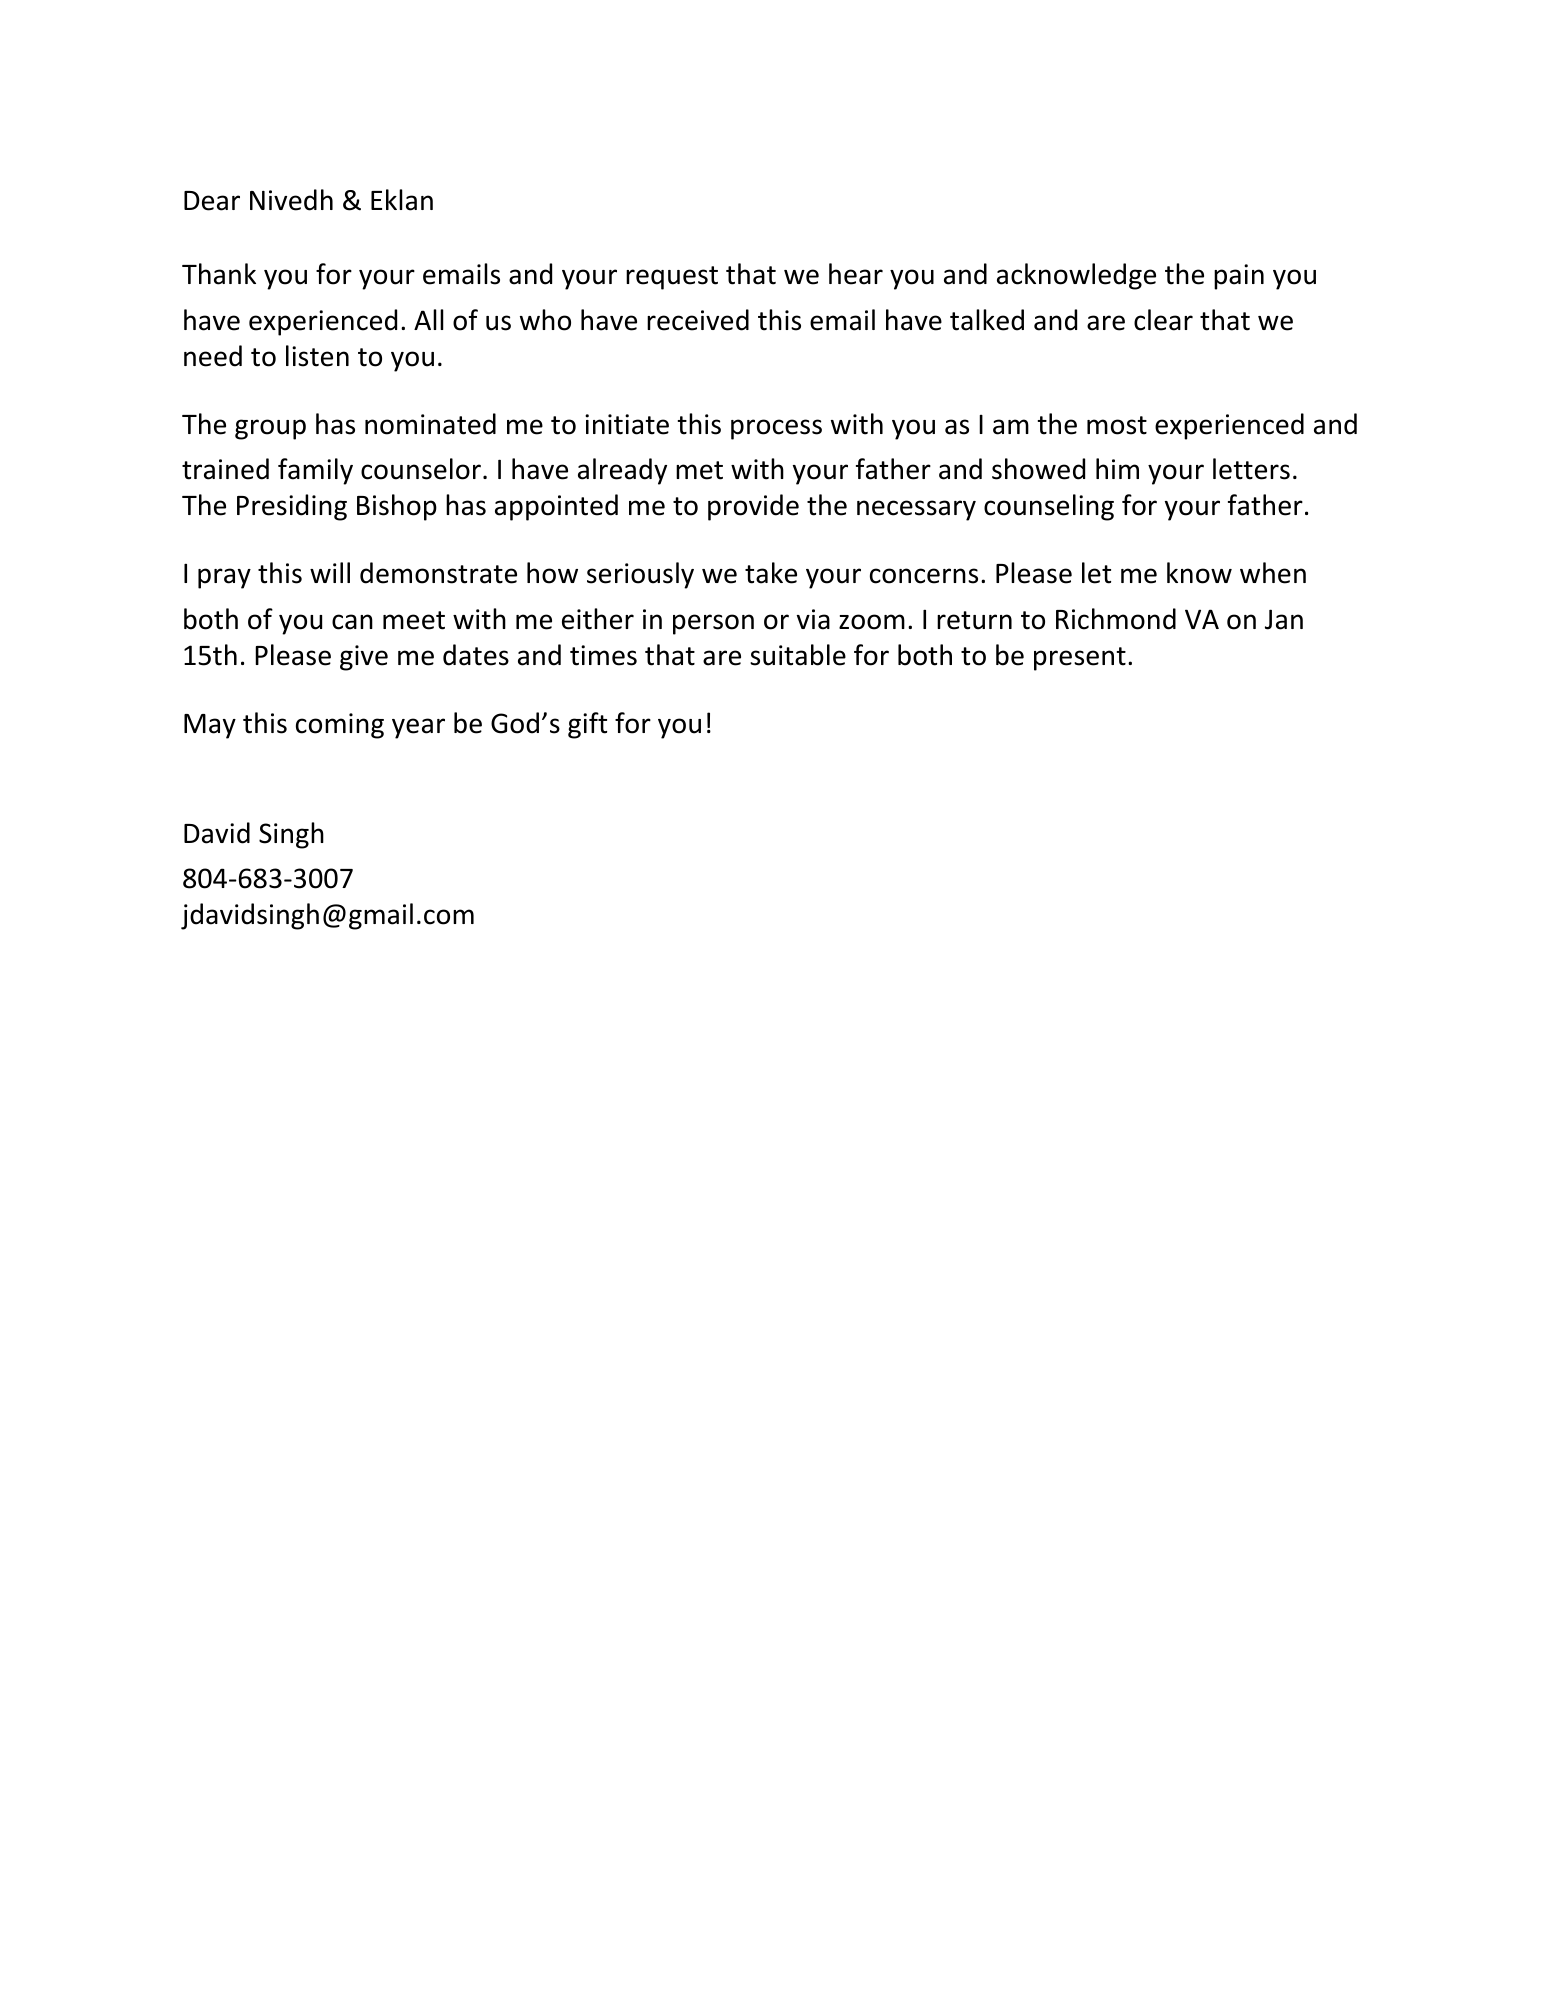 David Singh's letter to Nivedhan and Eklan